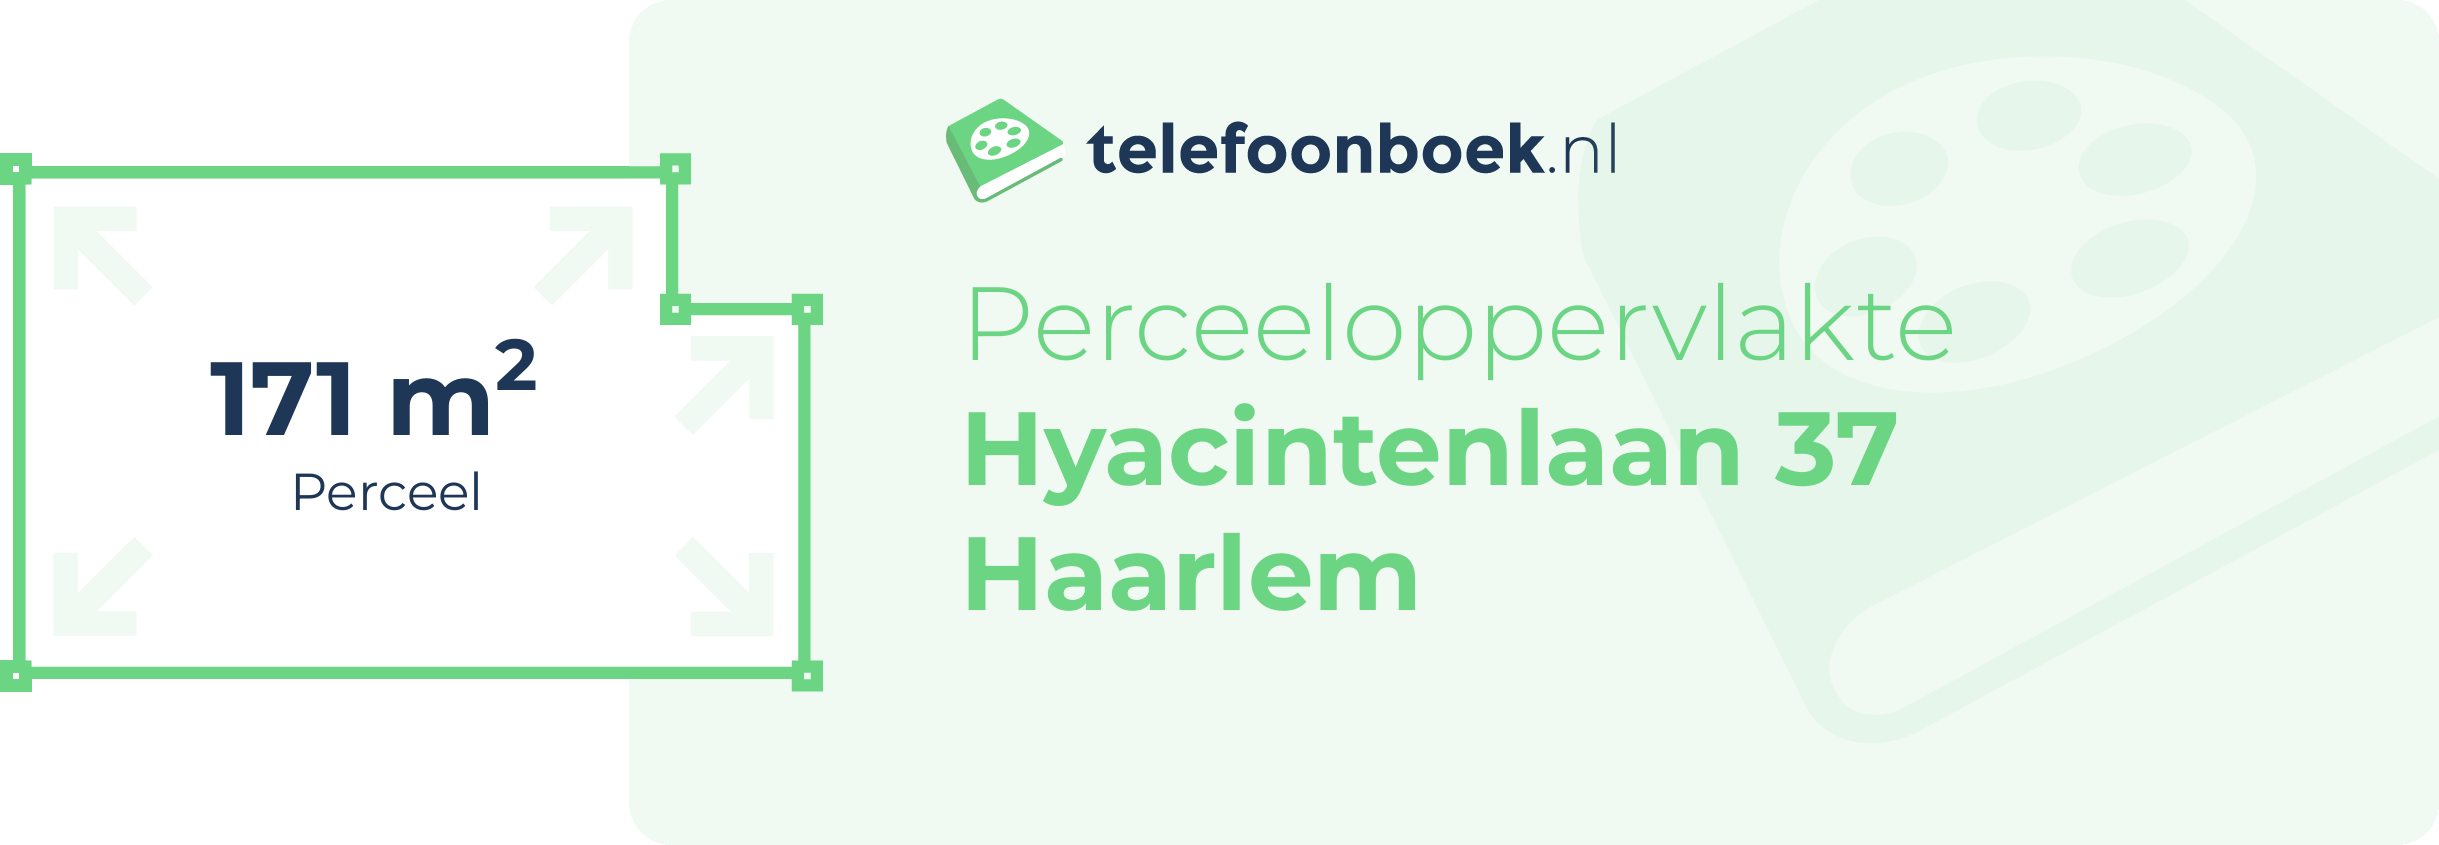 Perceeloppervlakte Hyacintenlaan 37 Haarlem